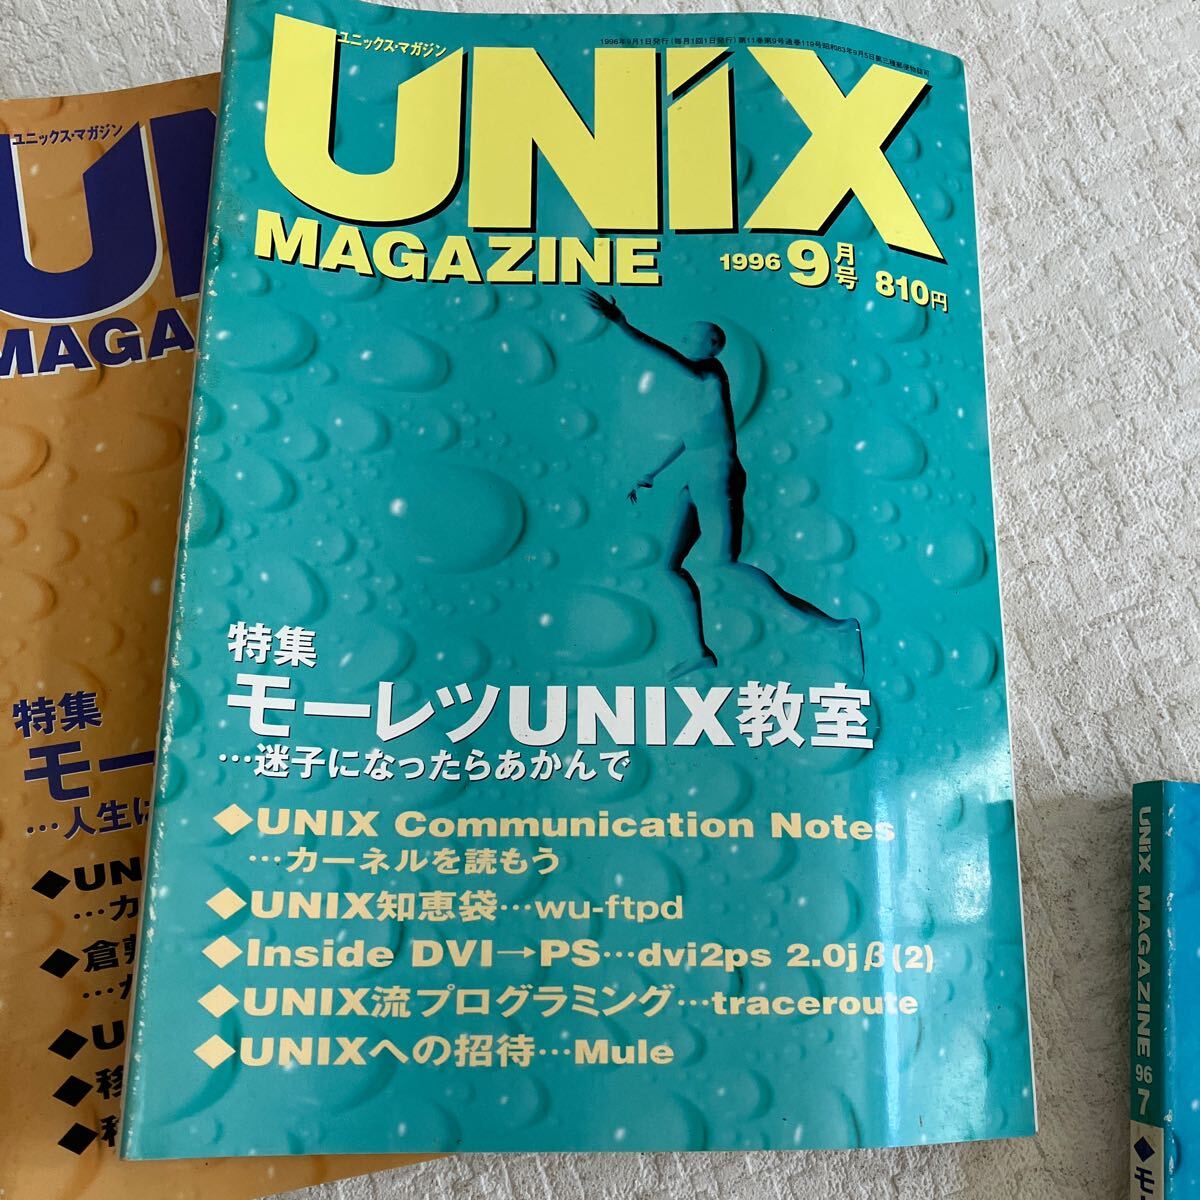 e338/19-80 技術情報誌 雑誌 ユニックスマガジン UNiX MAGAZINE 1996 まとめて 6冊 アスキー プログラミング 当時物 UNIX教室_画像4